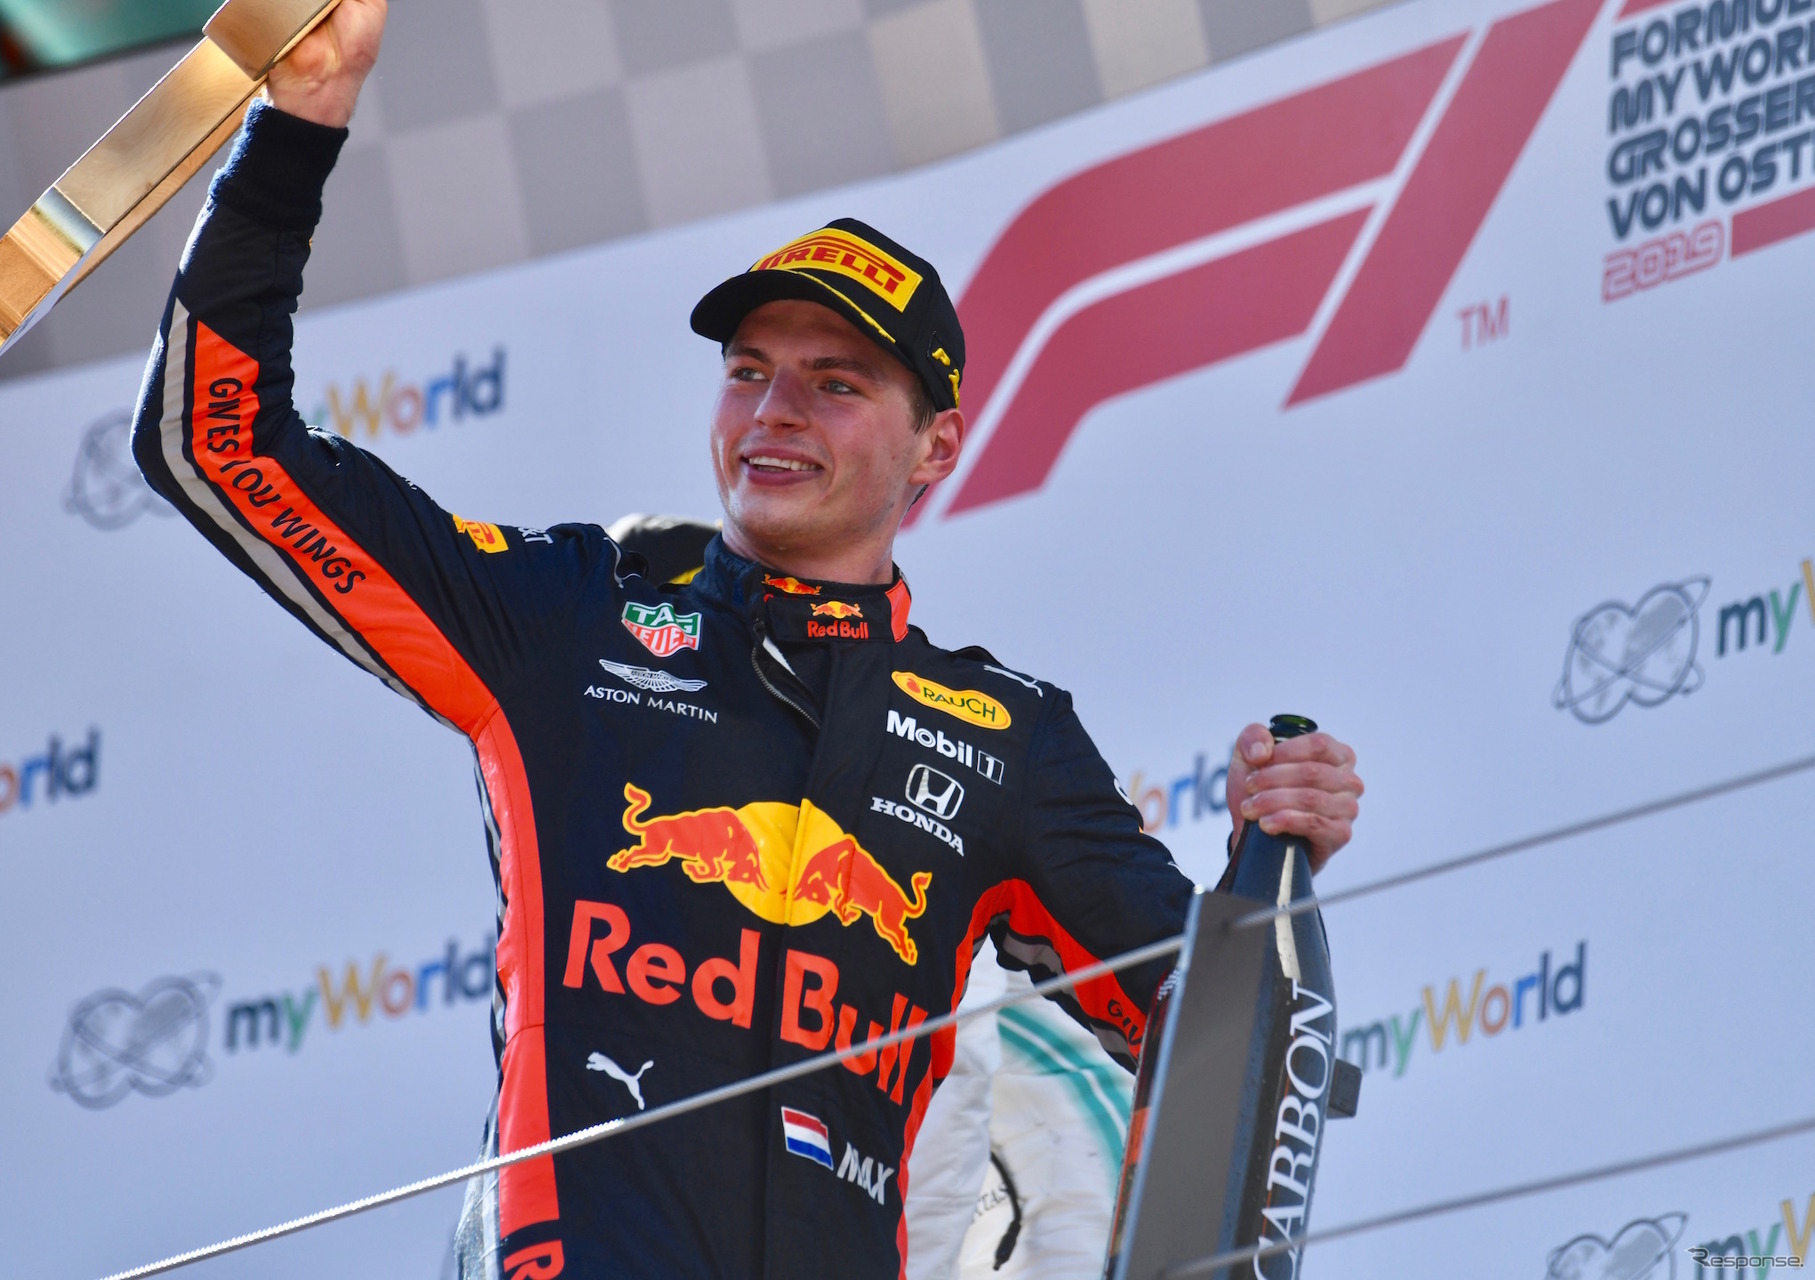 2019年のオーストリアGP優勝者、レッドブル・ホンダのマックス・フェルスタッペン。彼は2018年にもこのレースを制している（当時のマシンはレッドブル・TAGホイヤー）。